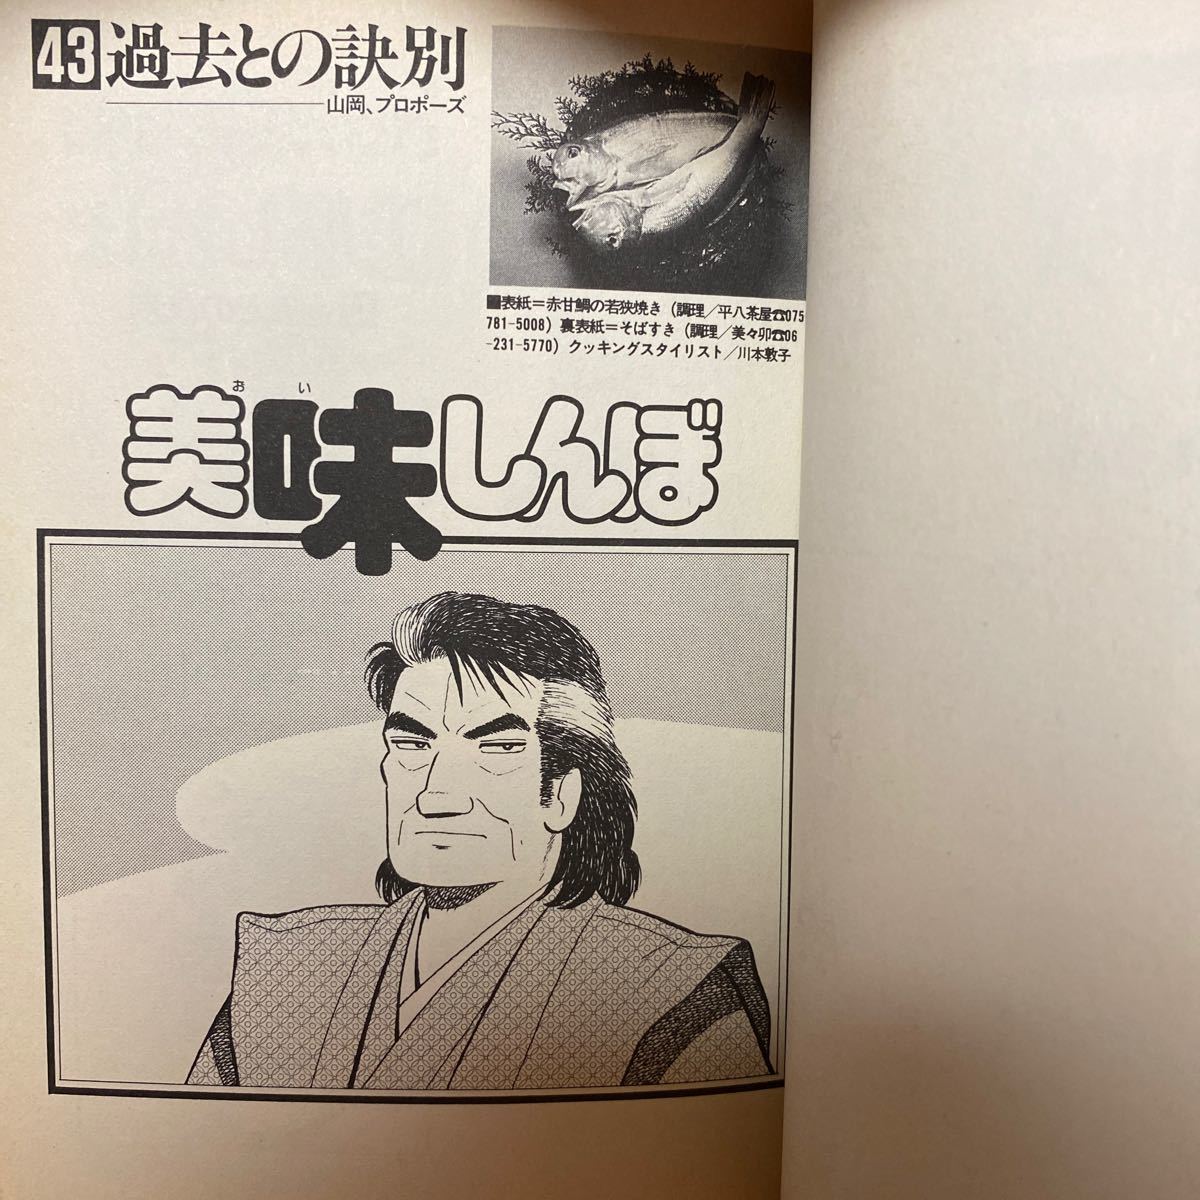 Paypayフリマ 美味しんぼ 43 1994年初版発行